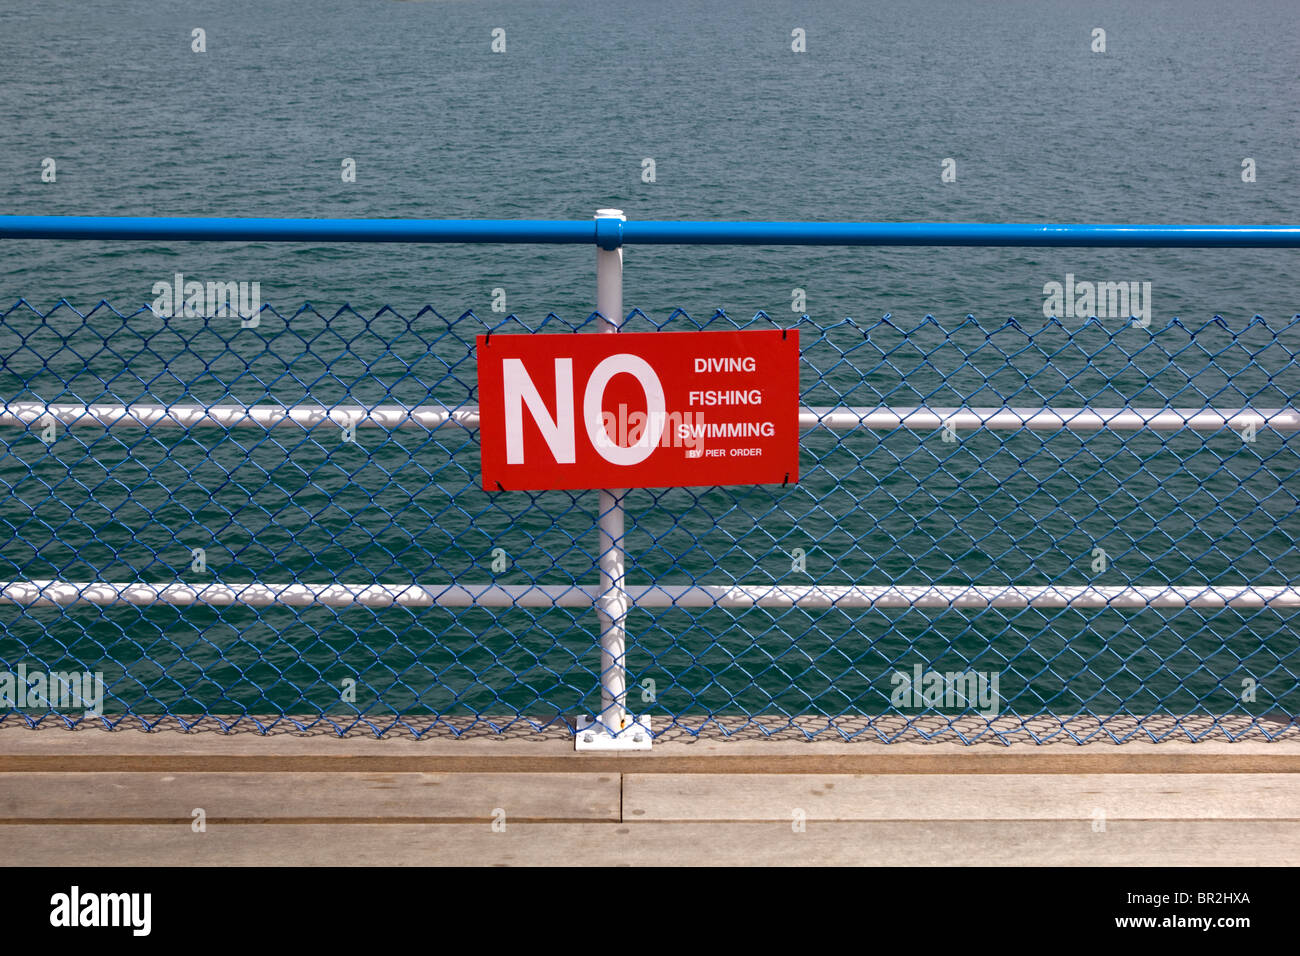 Aucun signe de plongée de l'île de Wight Sandown Pier UK Banque D'Images